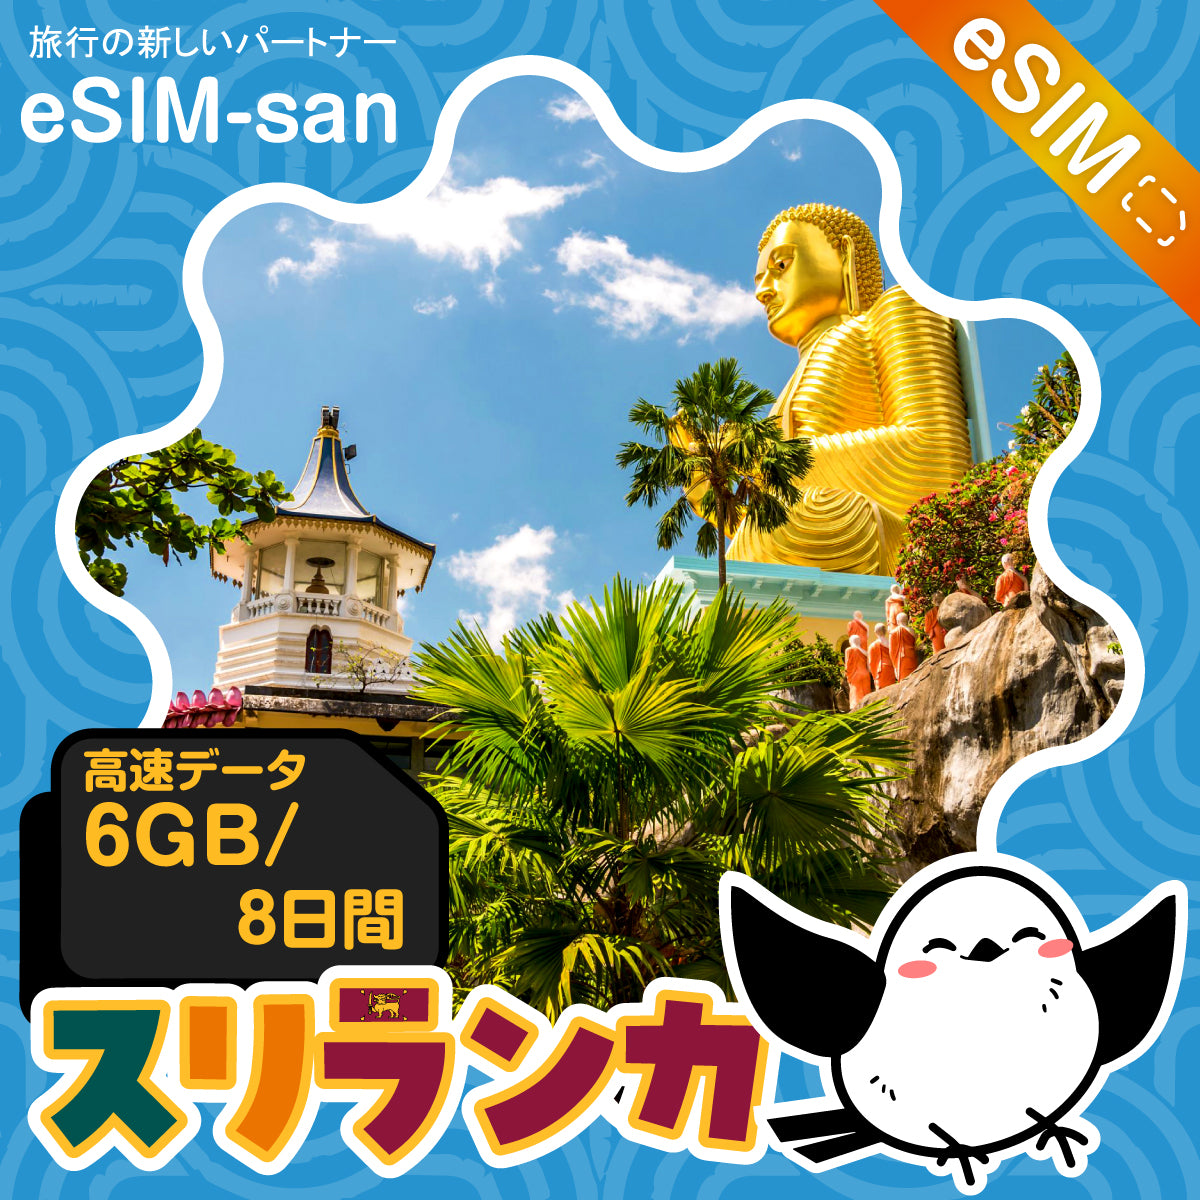 スリランカeSIMの6GBプラン画像_eSIM-san